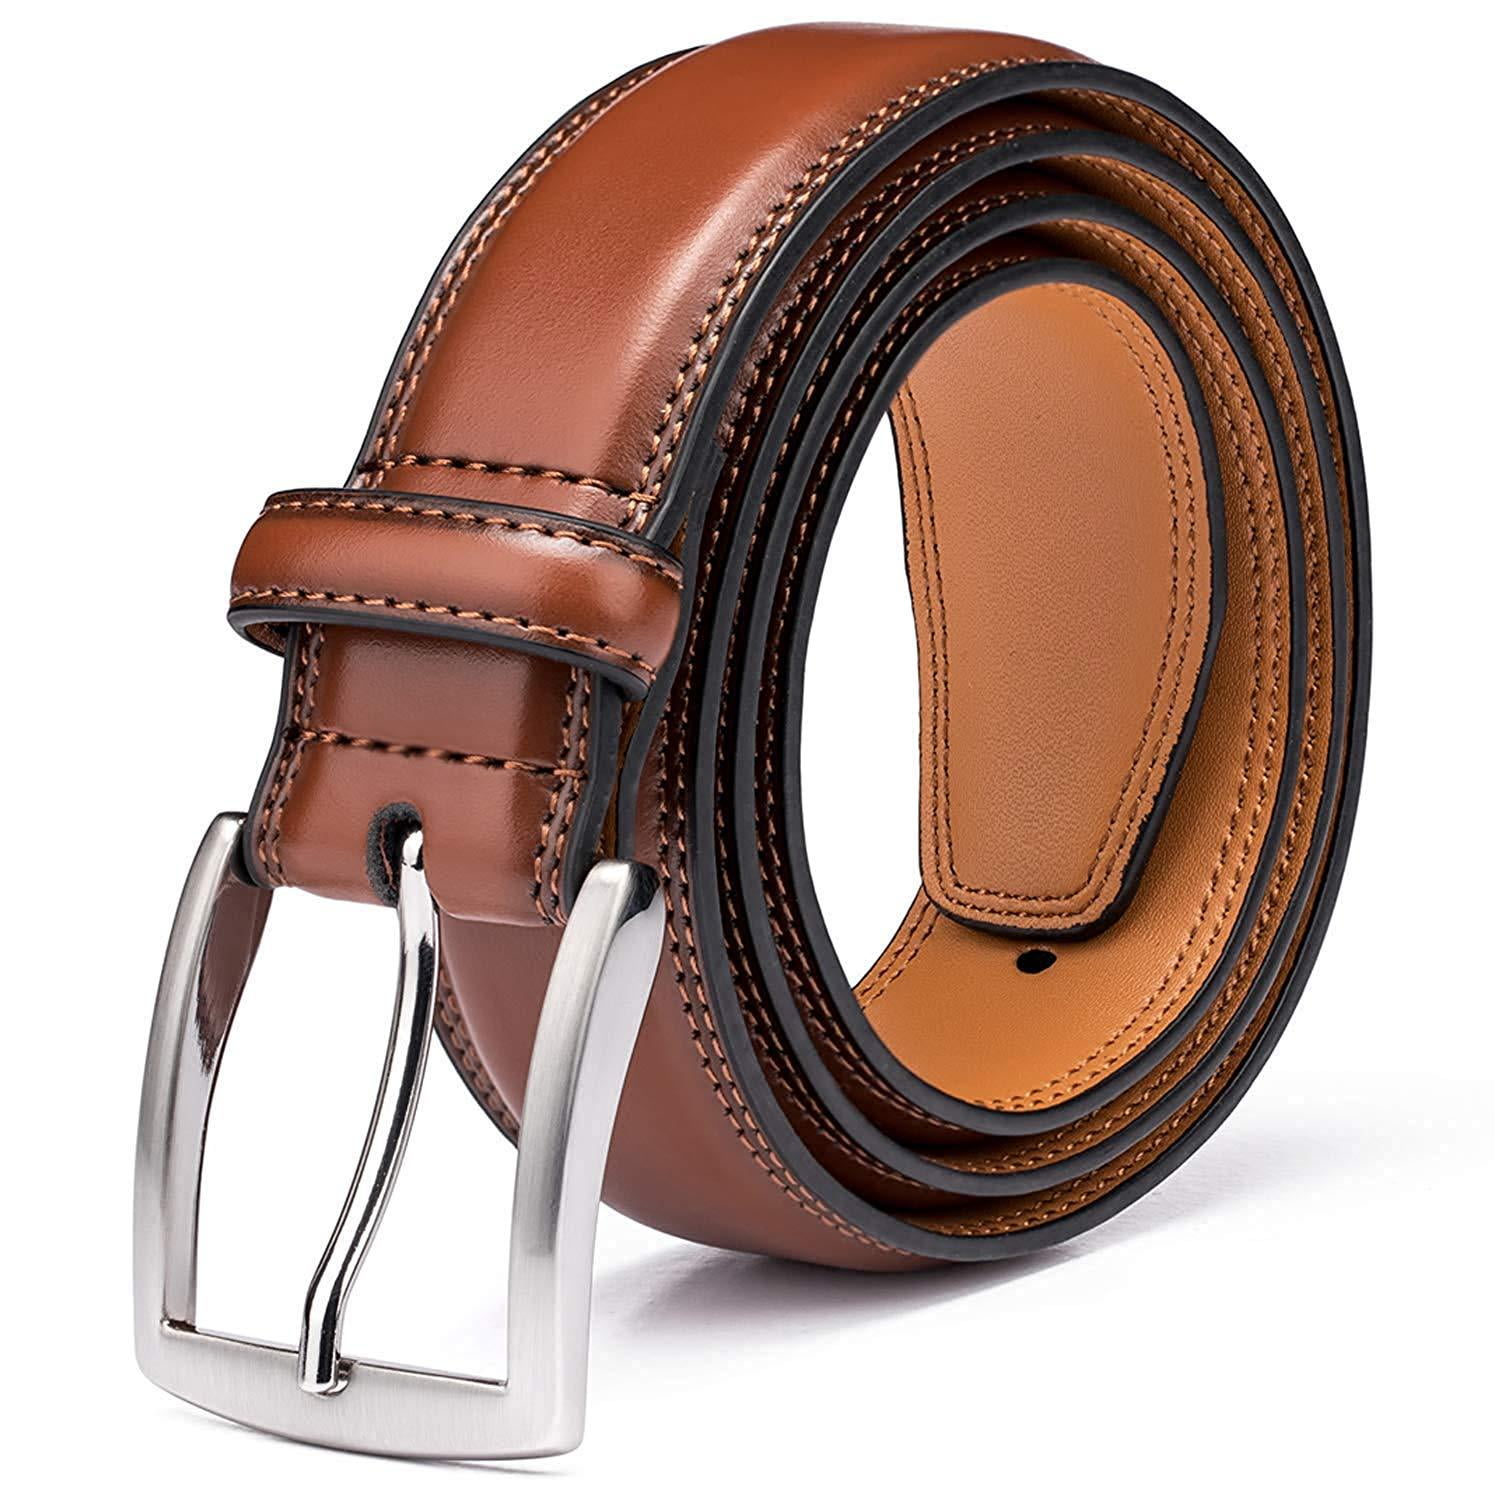 Men's Belt, Genuine Leather Dress Belts for Men with Single Prong